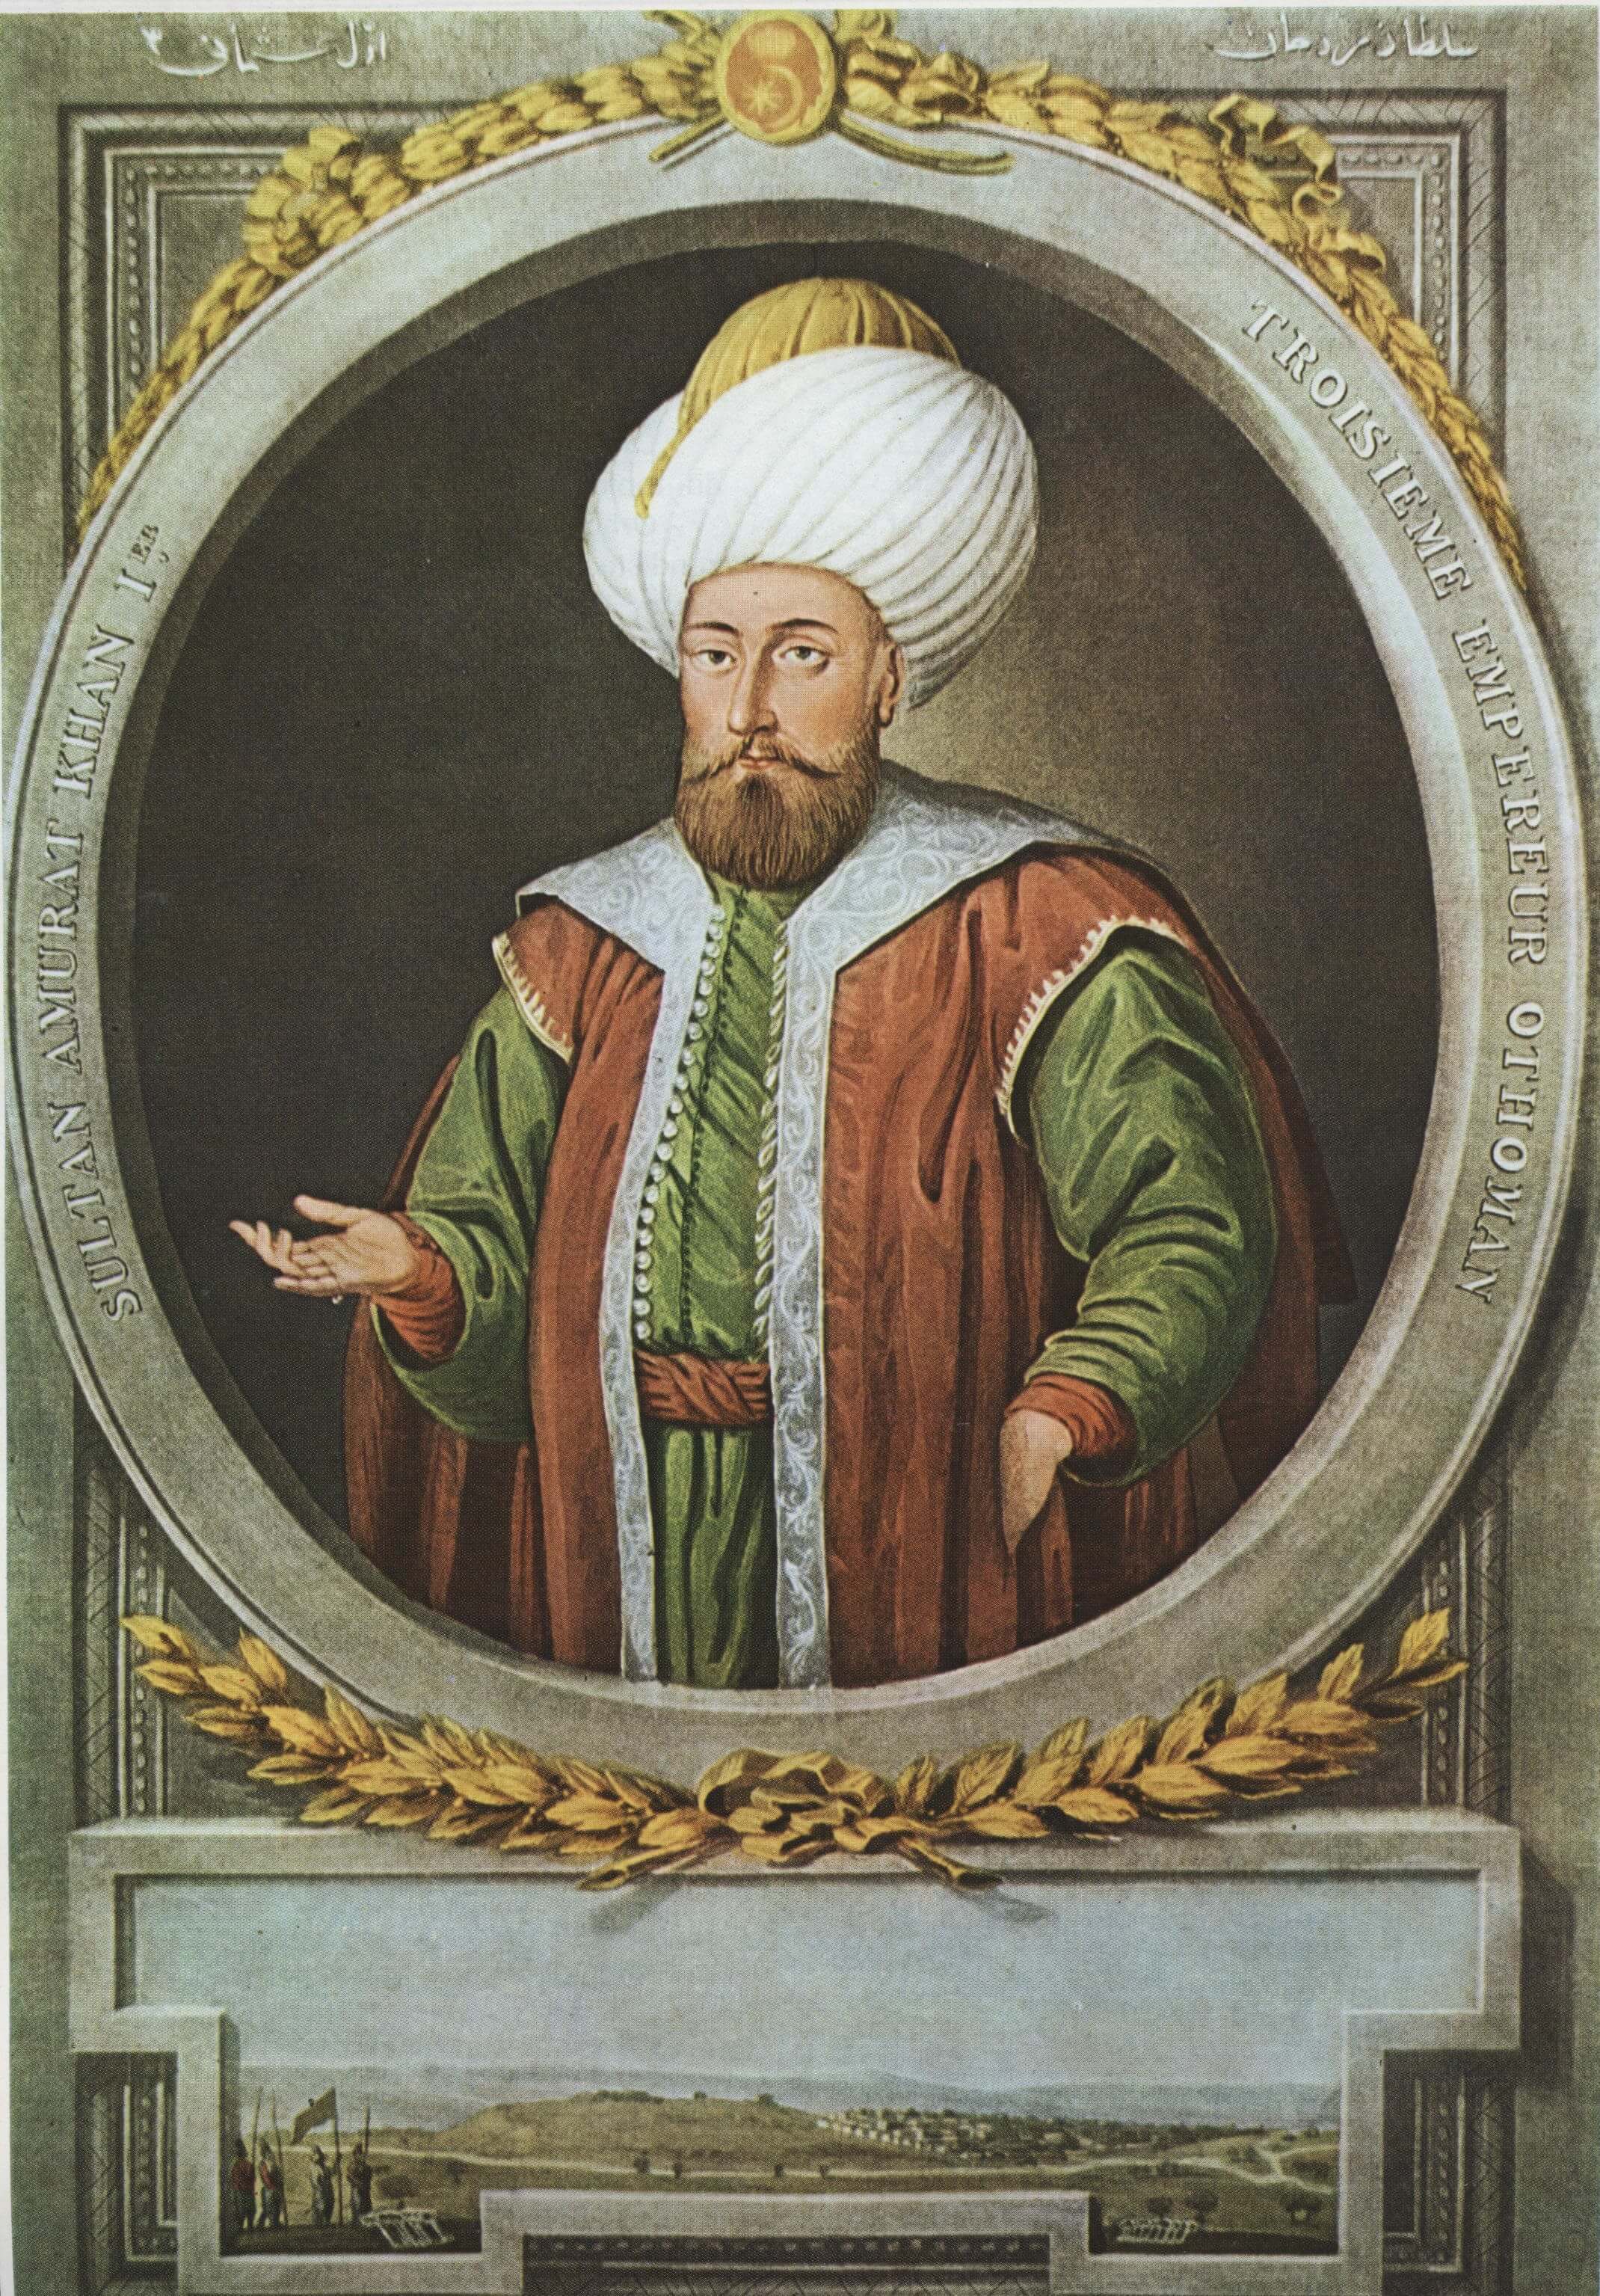 Sultan Serisi Sultan Murad Hudavendigar | Vav Gümüş - Erkek Yüzük - Koleksiyon Yüzükleri